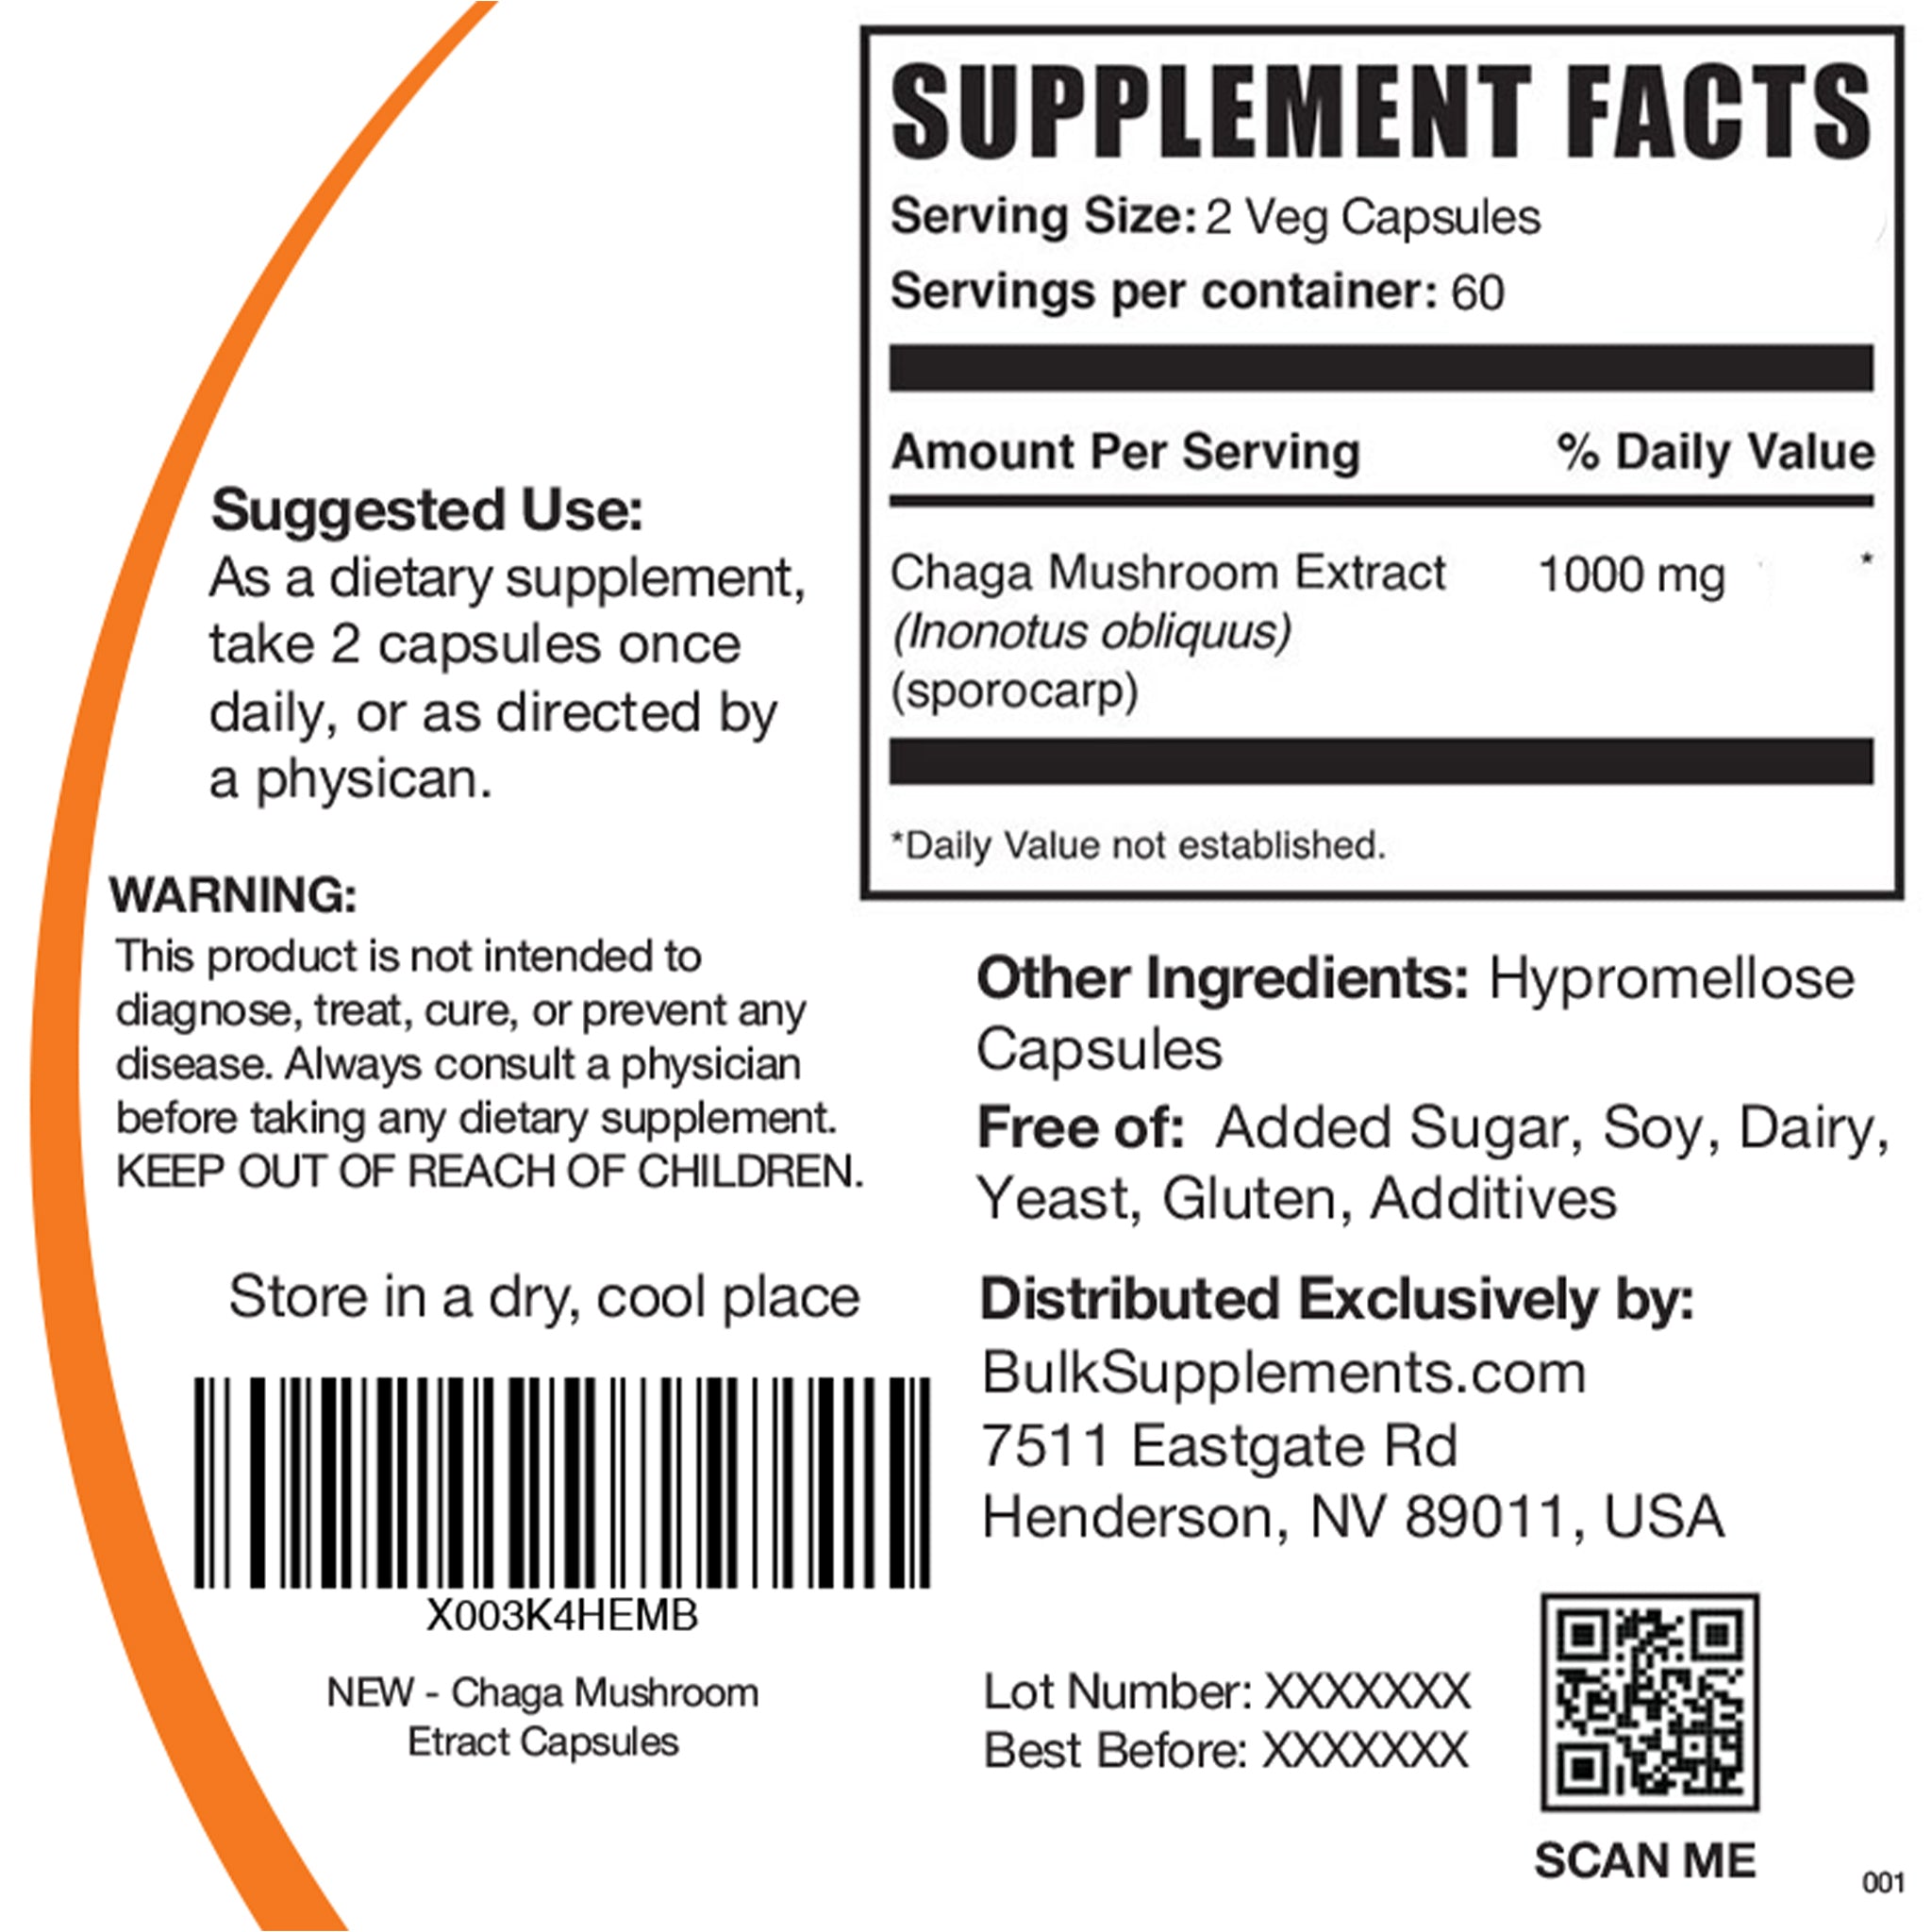 120 capsule Chaga Mushroom Supplement Facts Label